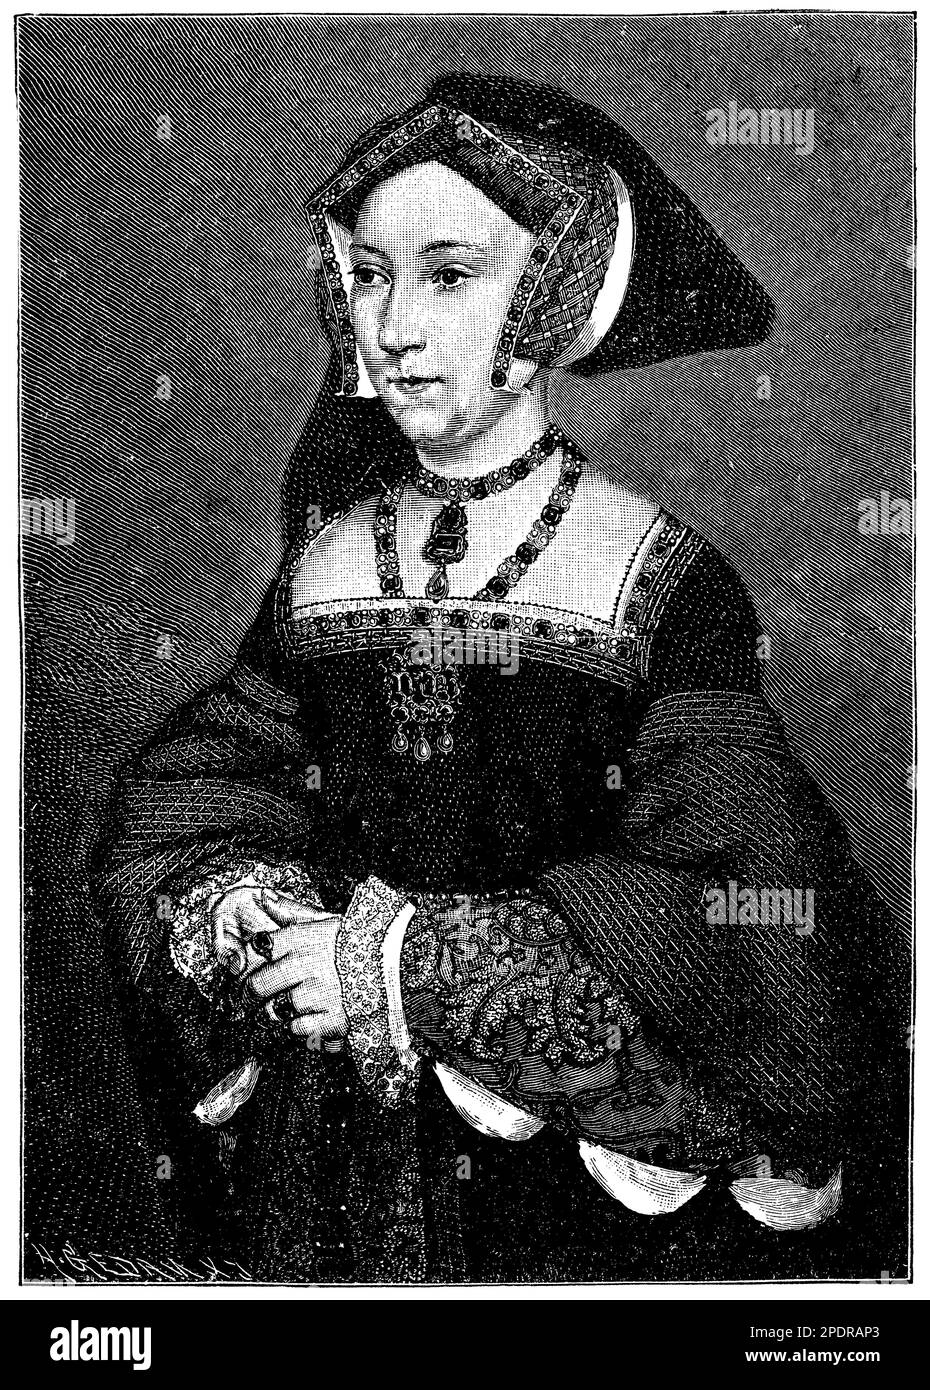 Joan Seymour (1508-1537) était la troisième femme du roi Henri VIII d'Angleterre et la mère du roi Edward VI Joan était connue pour son attitude calme et douce, et était une favorite de Henry après la relation tumultueuse avec sa femme précédente, Anne Boleyn. Joan a donné naissance à un fils, en s'assurant de sa position de reine, mais elle est morte peu après de complications liées à l'accouchement. Malgré son bref règne et son manque de documentation historique, Joan reste une figure remarquable dans l'histoire de Tudor. Banque D'Images